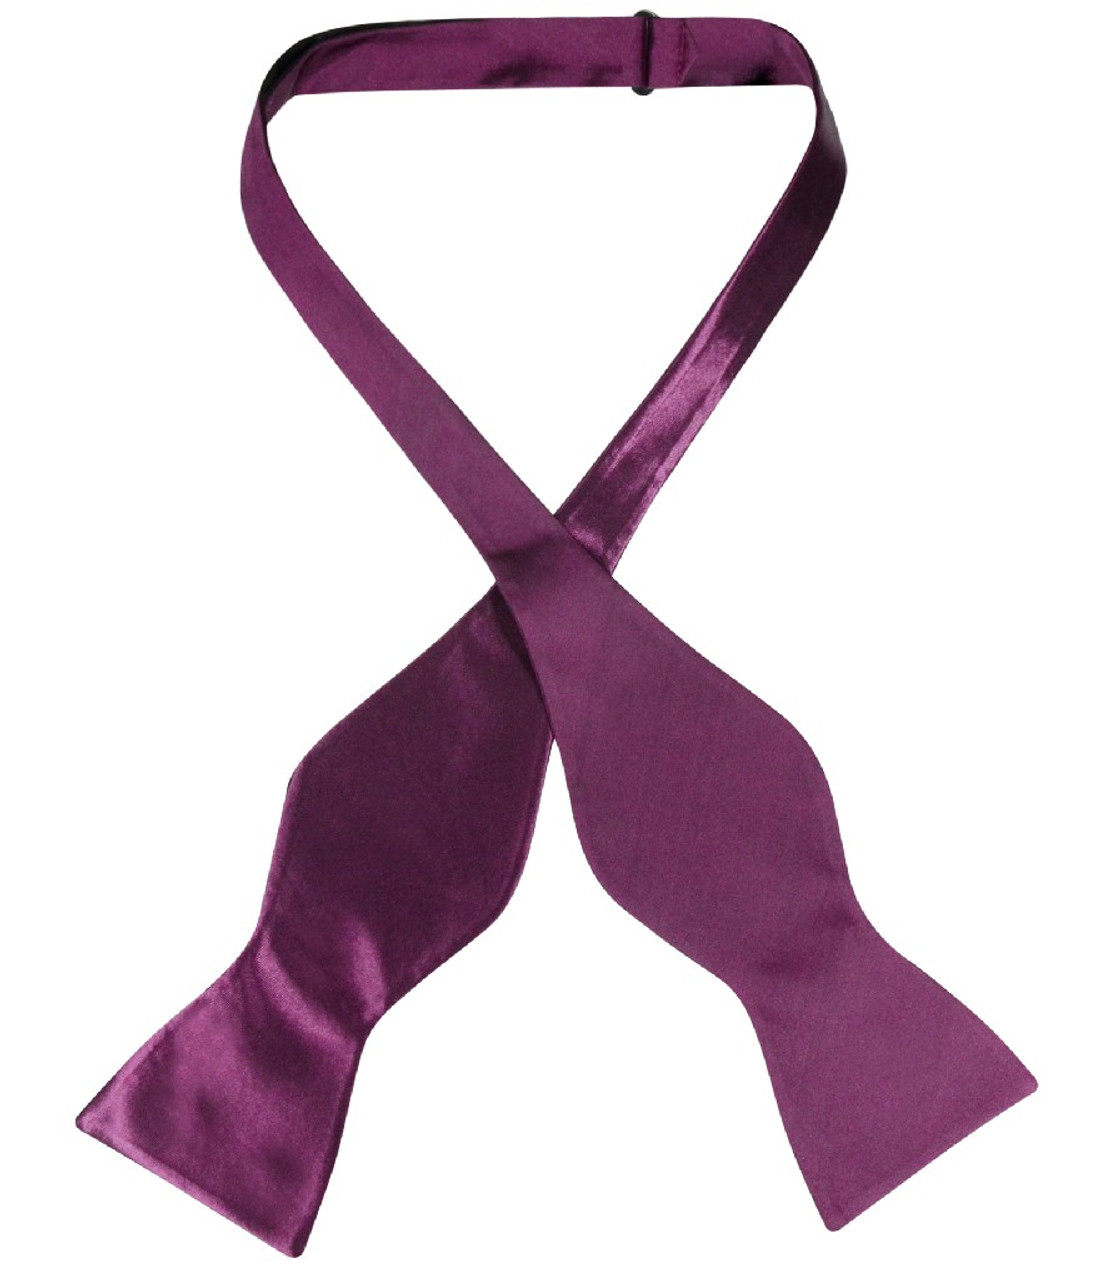 Biagio Self Tie Bow Tie Solid Eggplant Purple Color Mens BowTie